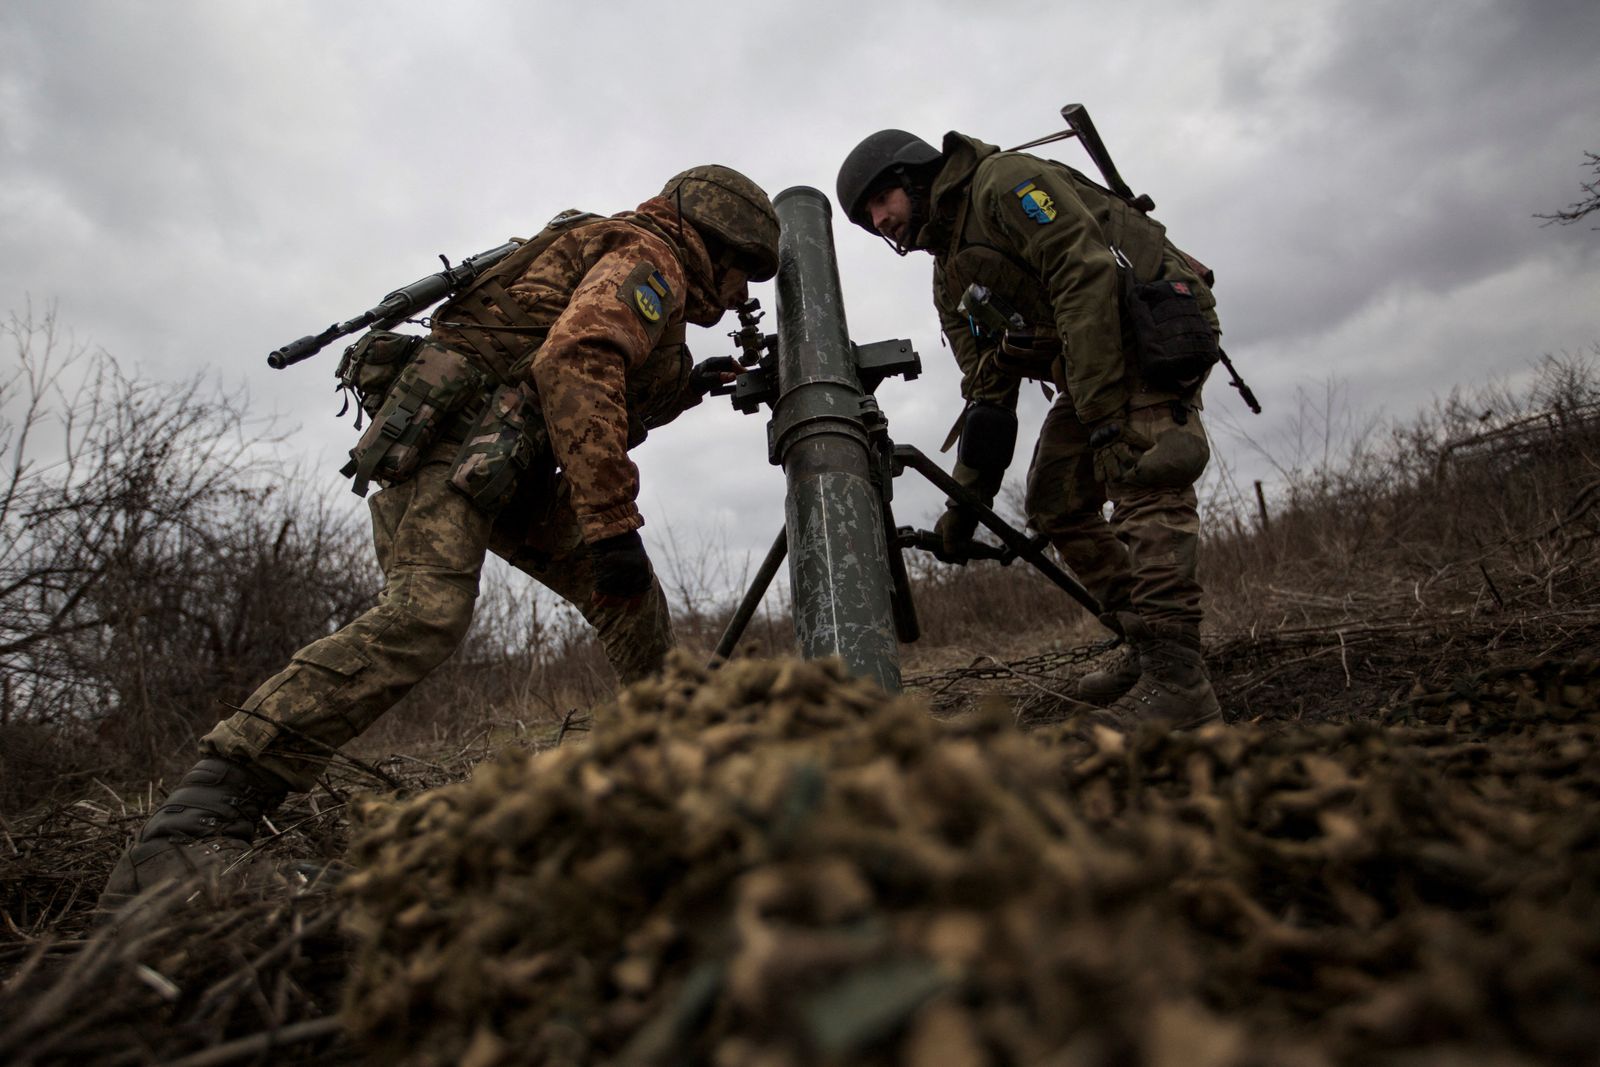 جنديان أوكرانيان يستعدان لإطلاق قذيفة هاون باتجاه مواقع القوات الروسية، في ضواحي باخموت بمنطقة دونيتسك الأوكرانية، 30 ديسمبر 2022 - REUTERS